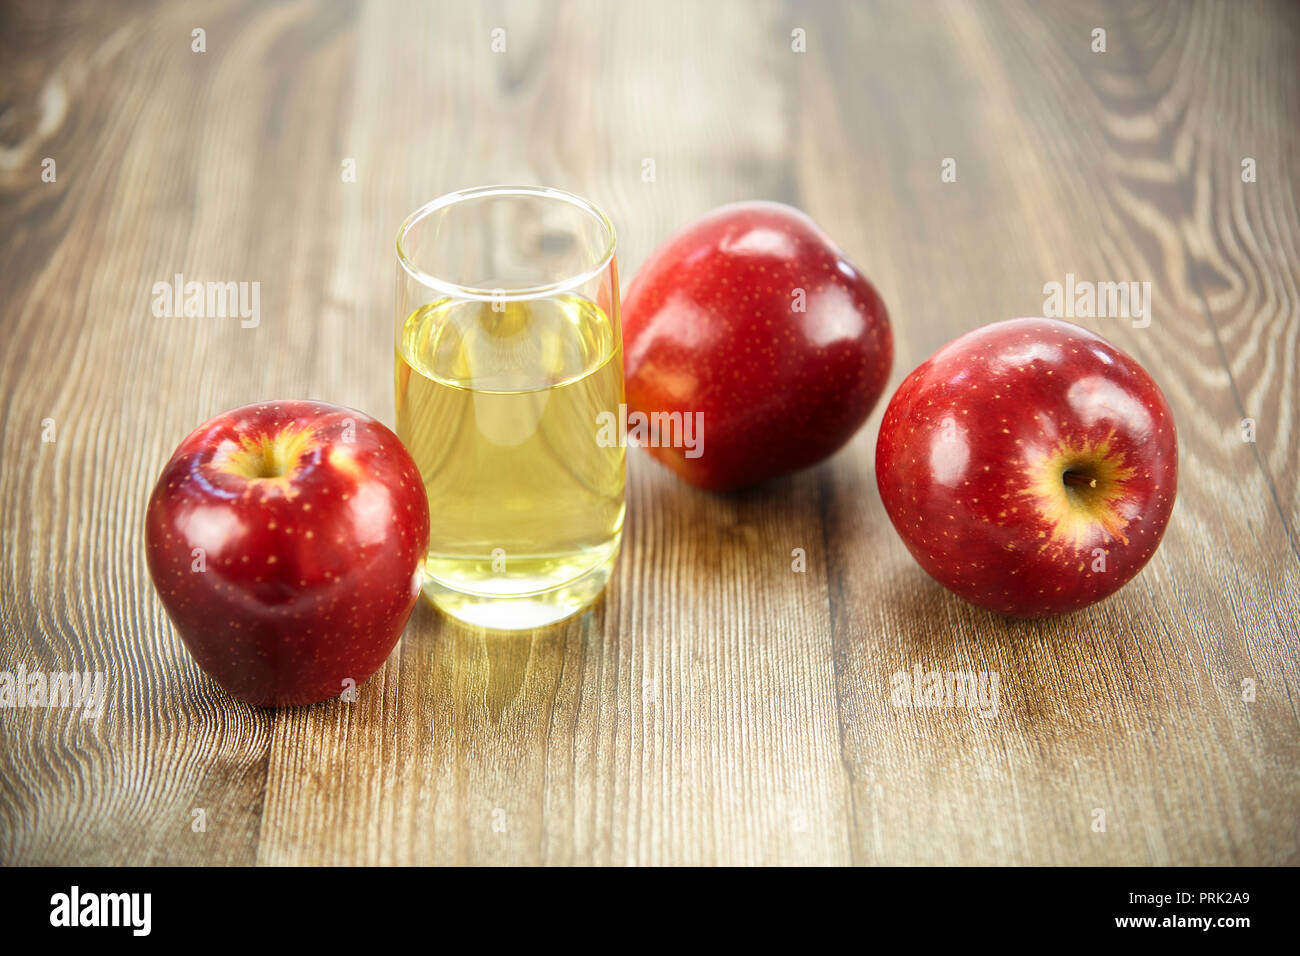 Drei Äpfel und ein Glas Apfelsaft auf der Oberfläche des Holzes. Stockfoto